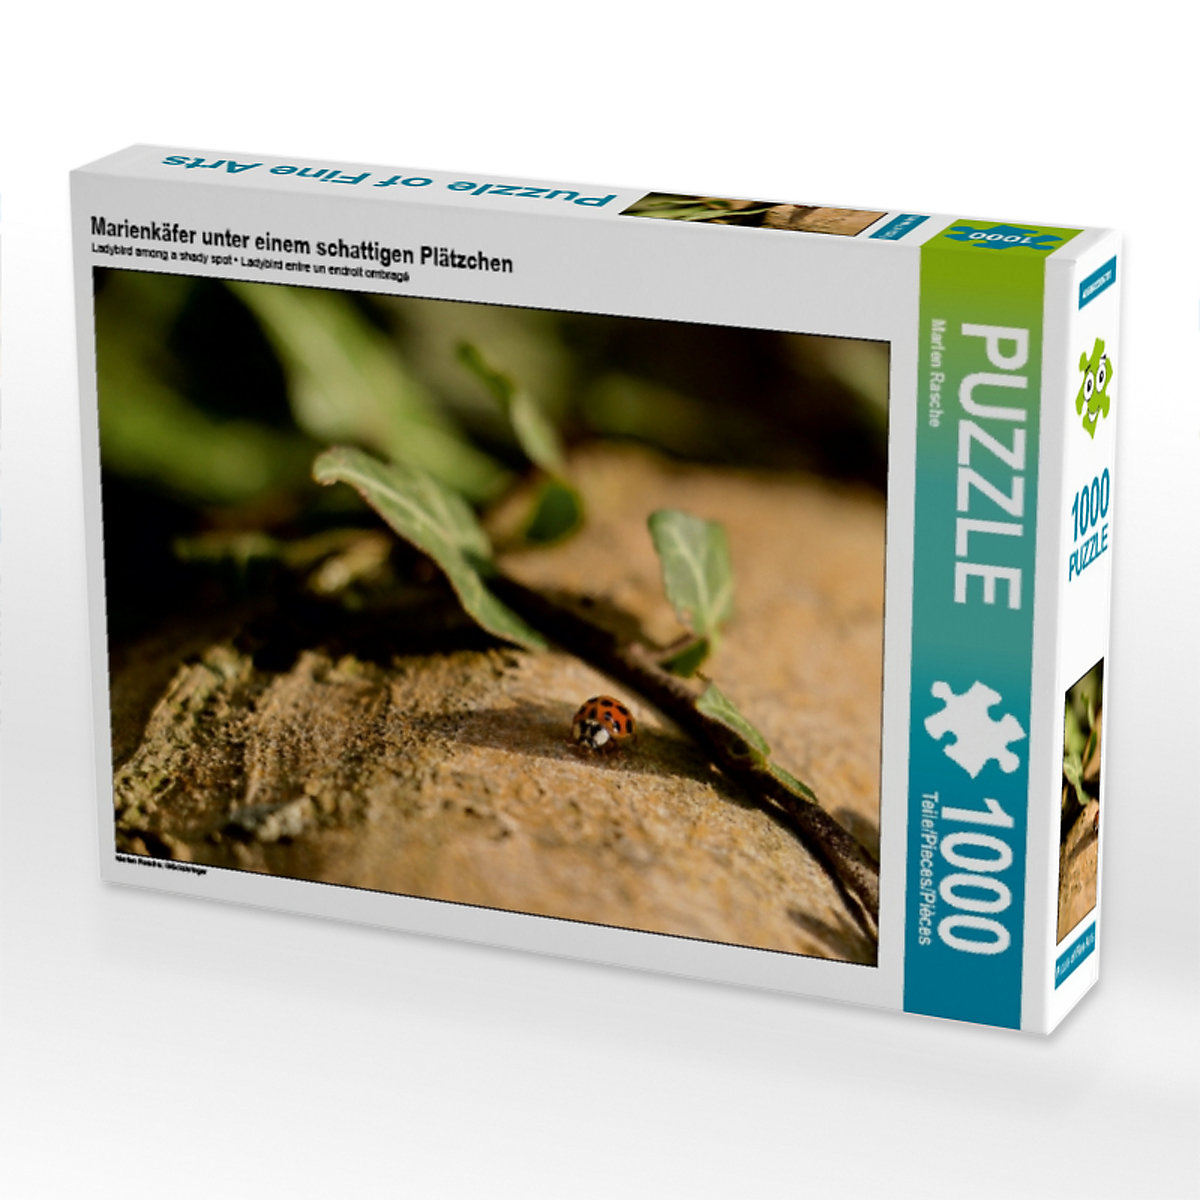 CALVENDO® Puzzle CALVENDO Puzzle Marienkäfer unter einem schattigen Plätzchen 1000 Teile Foto-Puzzle für glückliche Stunden